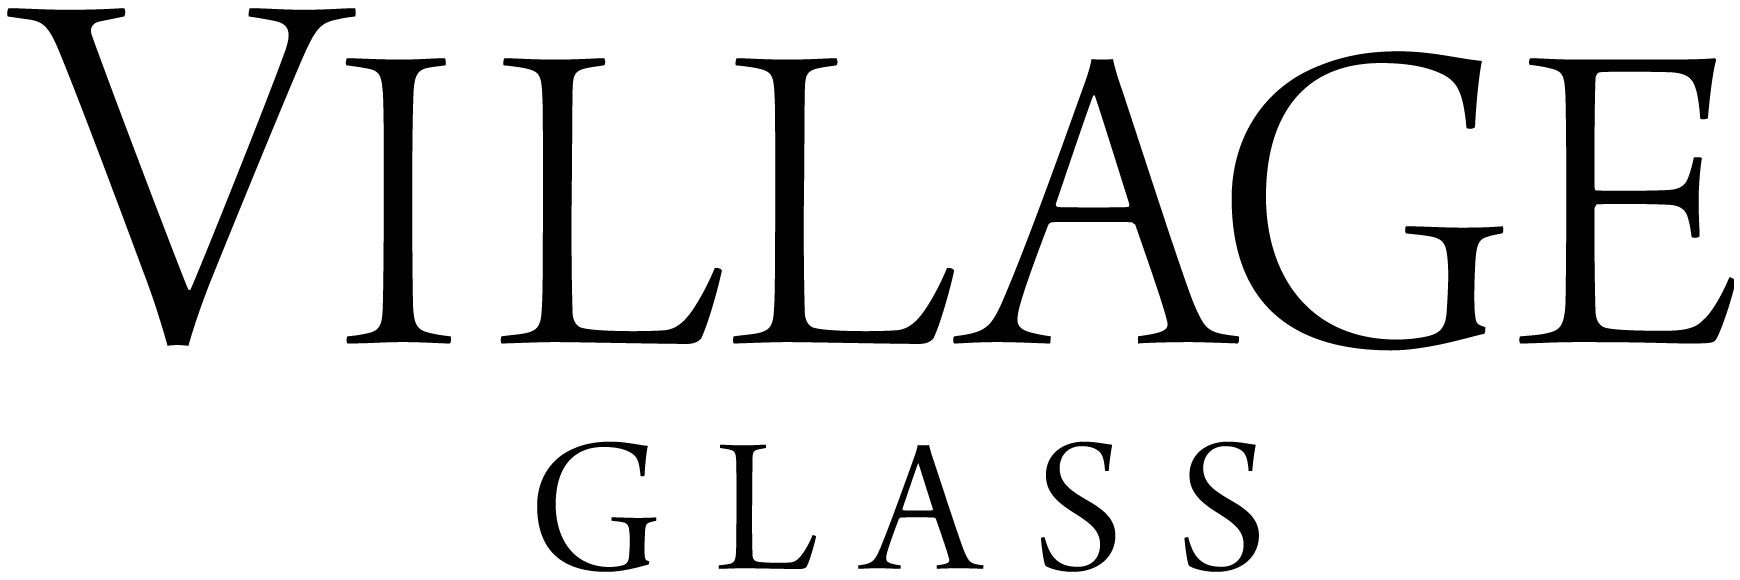 Village Glass